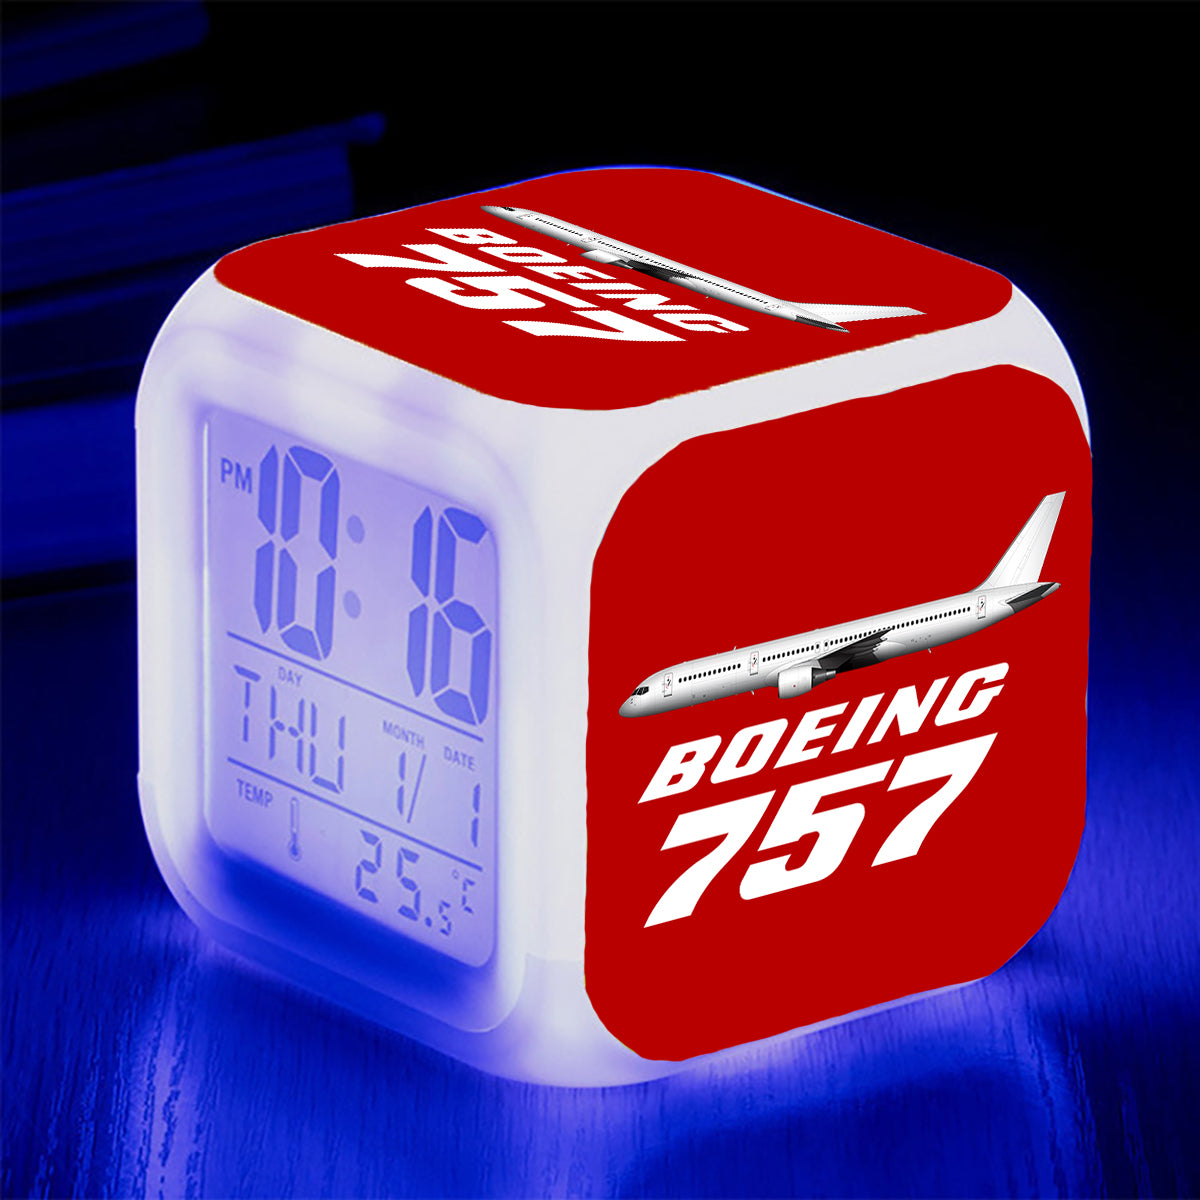 The Boeing 757 Designed "7 Colour" Digital Alarm Clock